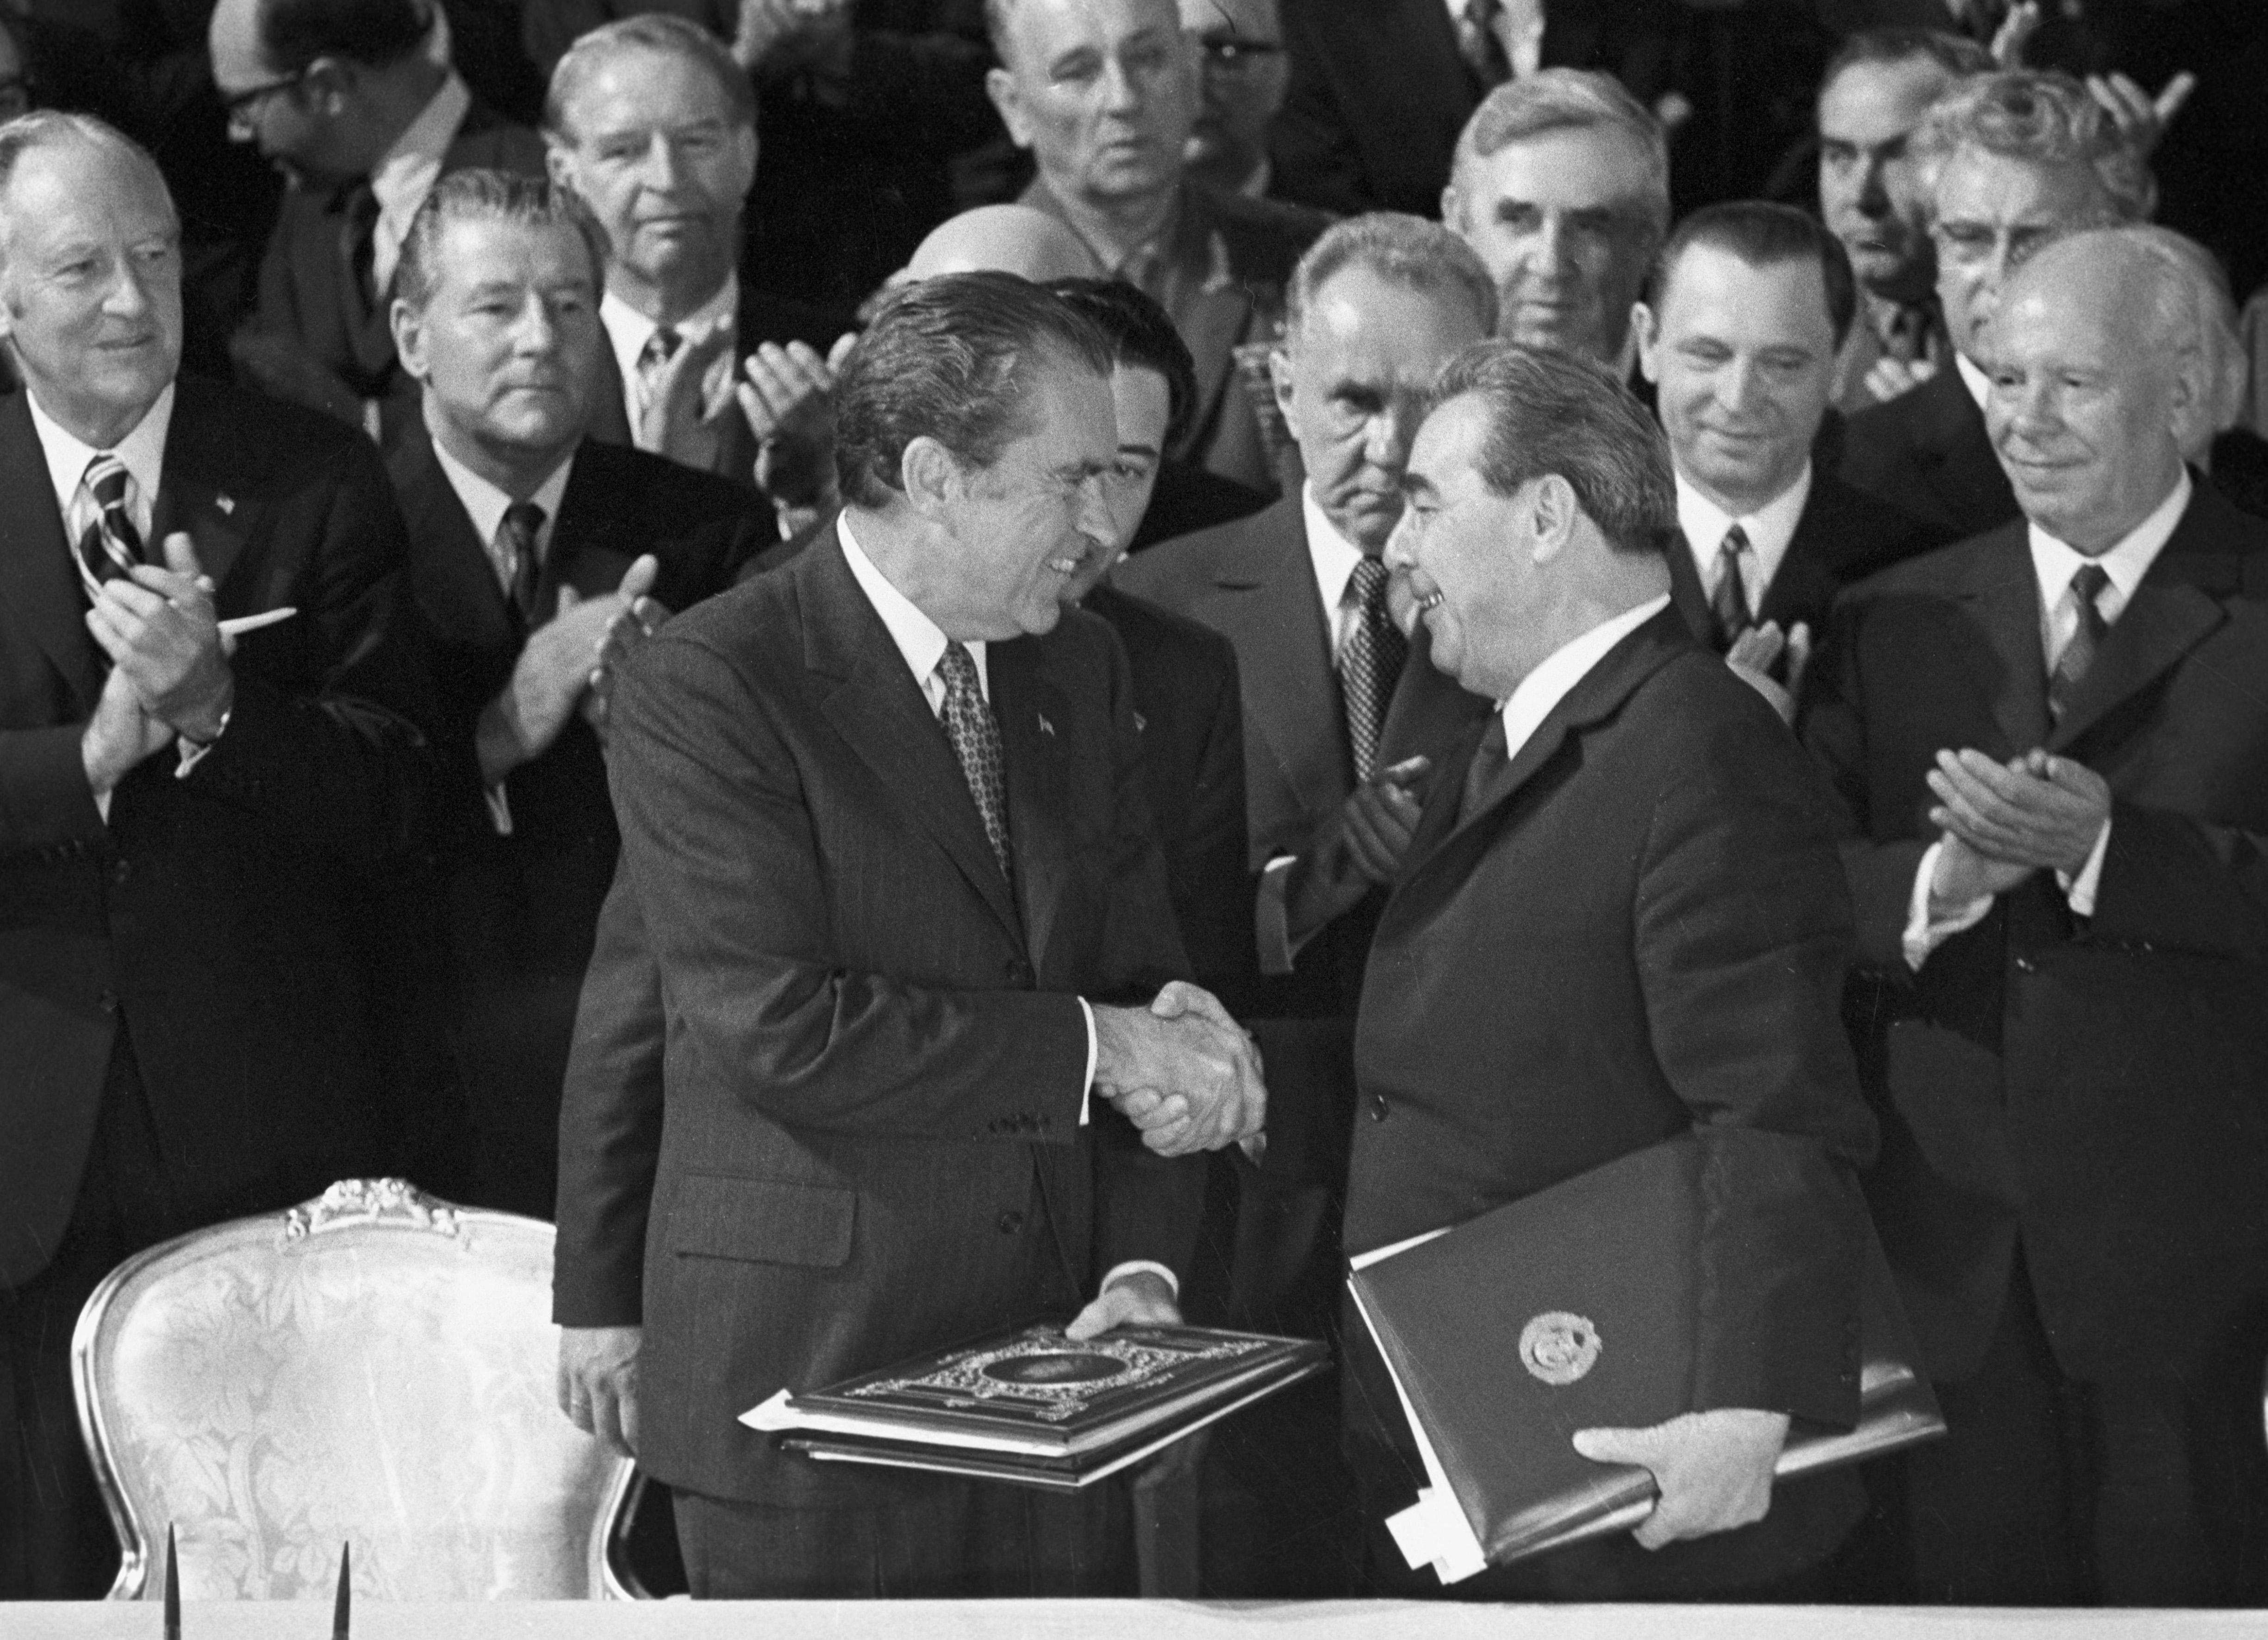 Ötven éve, a hidegháború csúcsán tudott fegyverkorlátozásról megállapodni az USA és a Szovjetunió